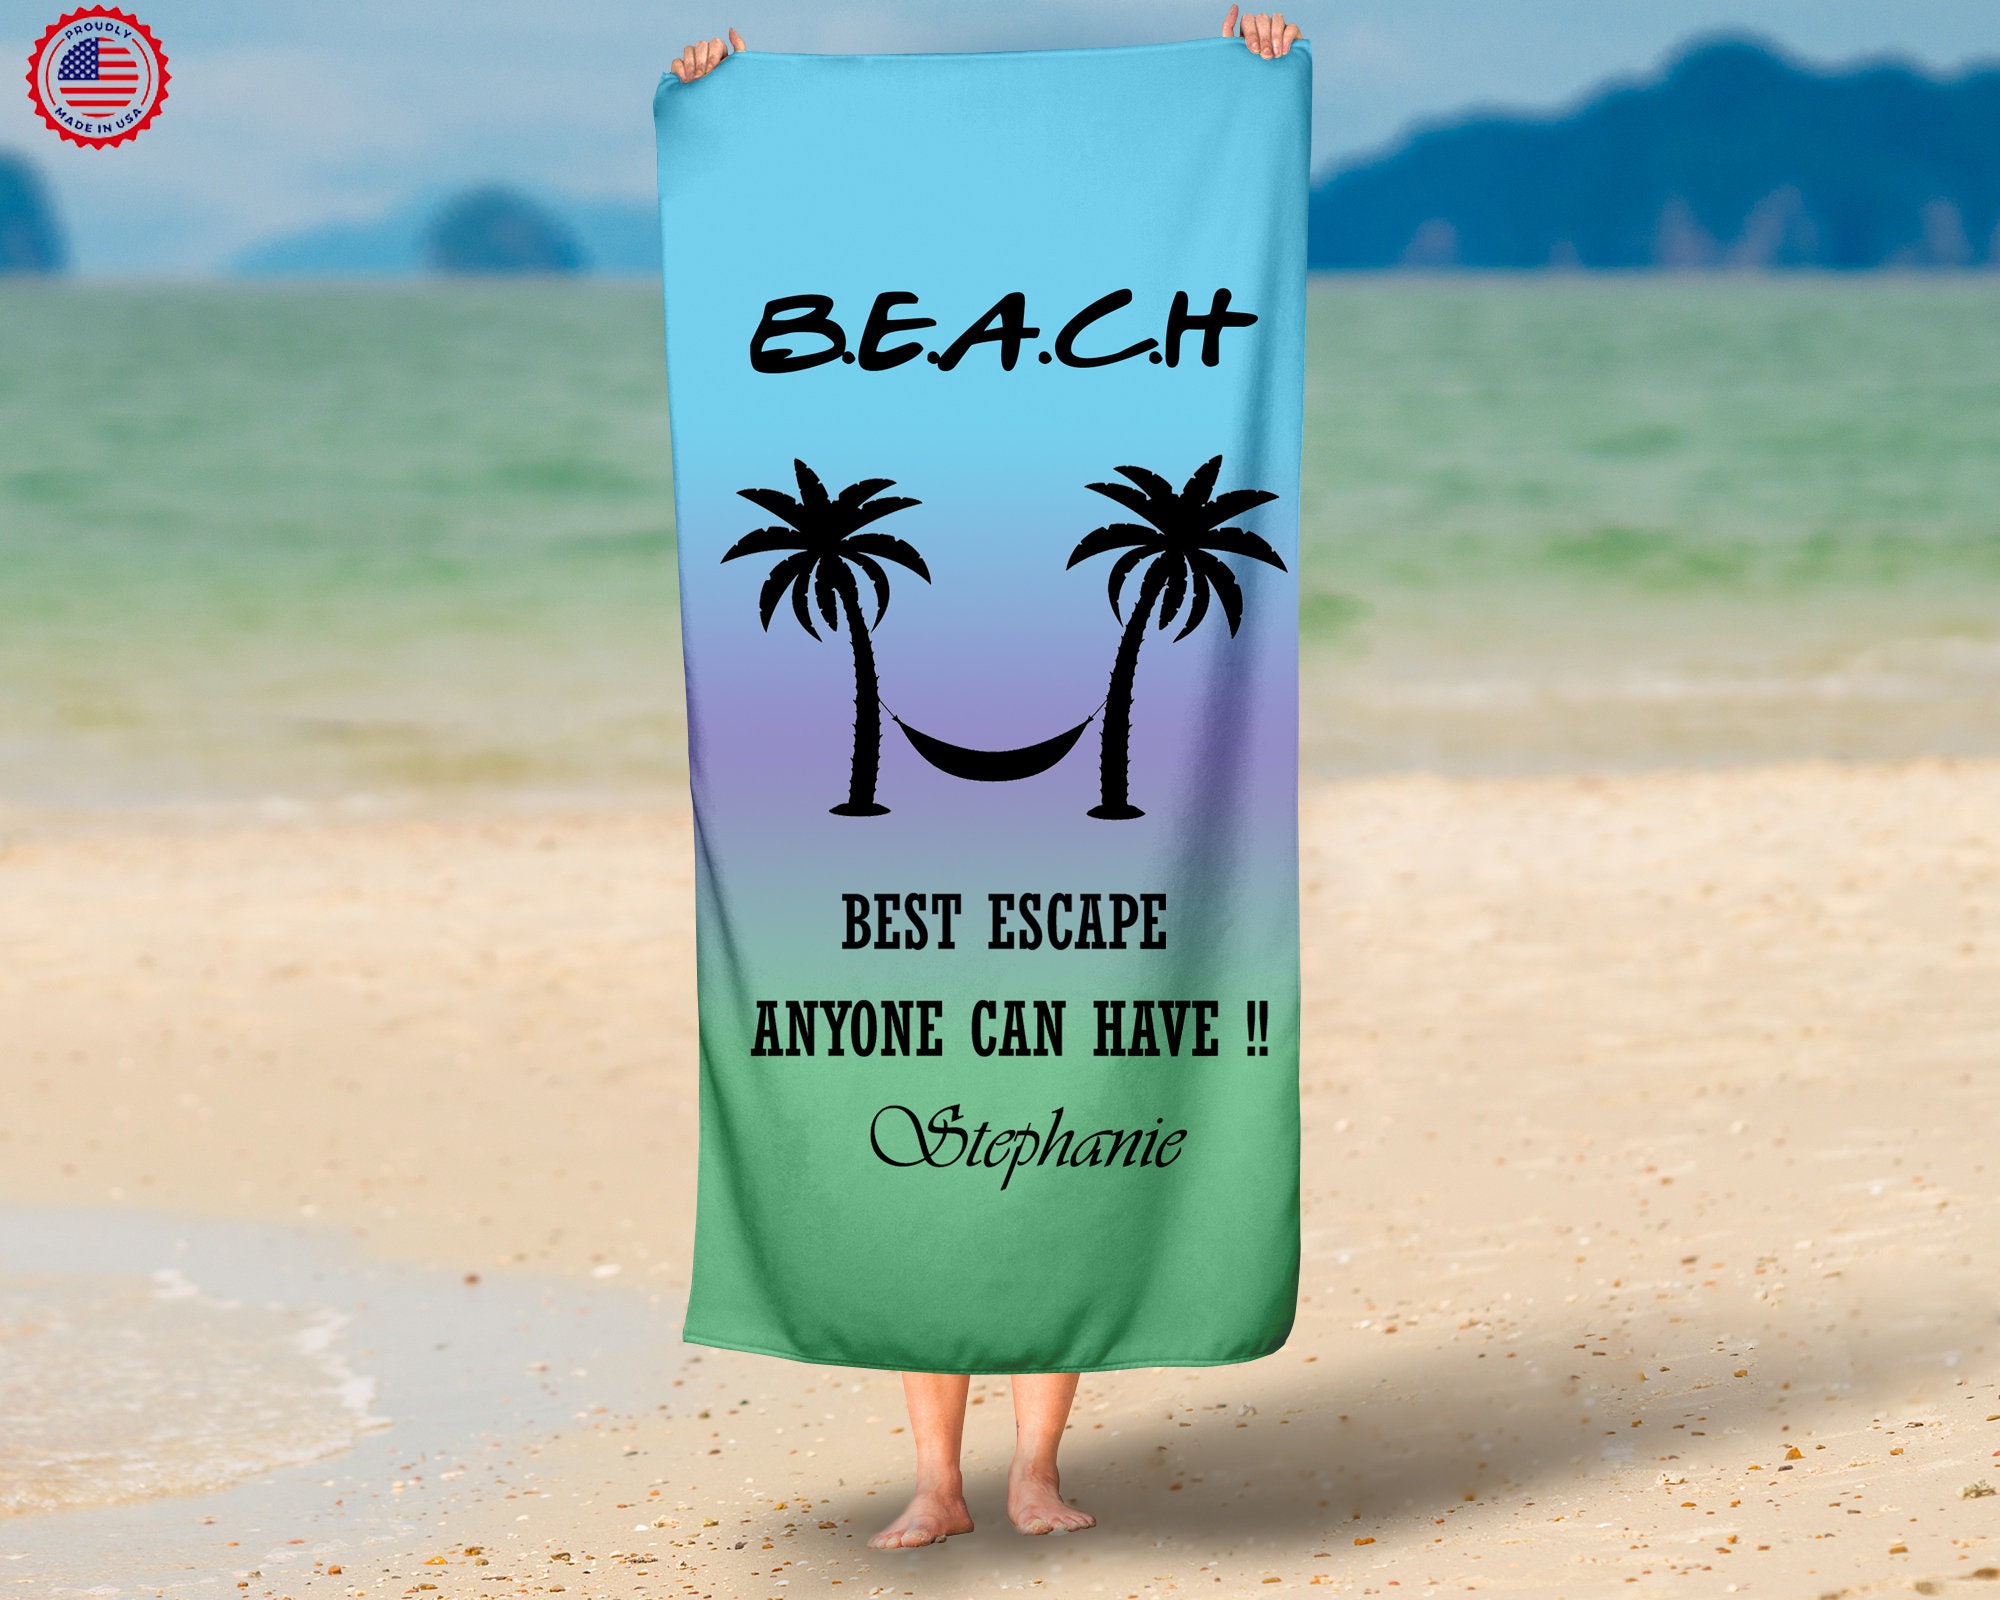 Round Beach Towels